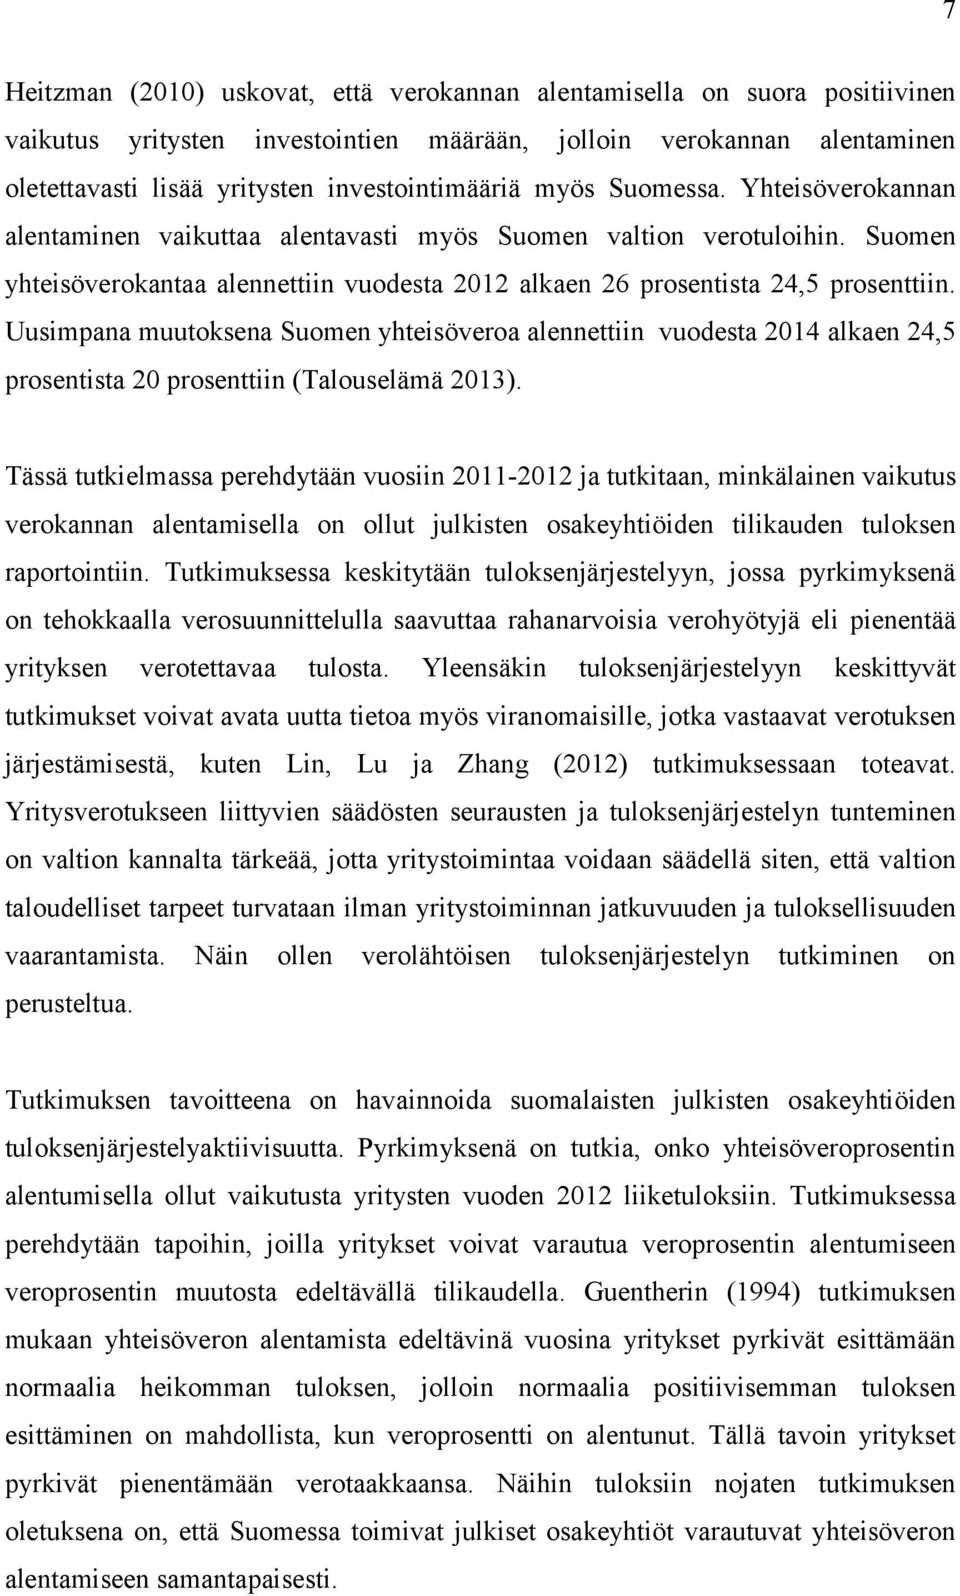 Uusimpana muutoksena Suomen yhteisöveroa alennettiin vuodesta 2014 alkaen 24,5 prosentista 20 prosenttiin (Talouselämä 2013).